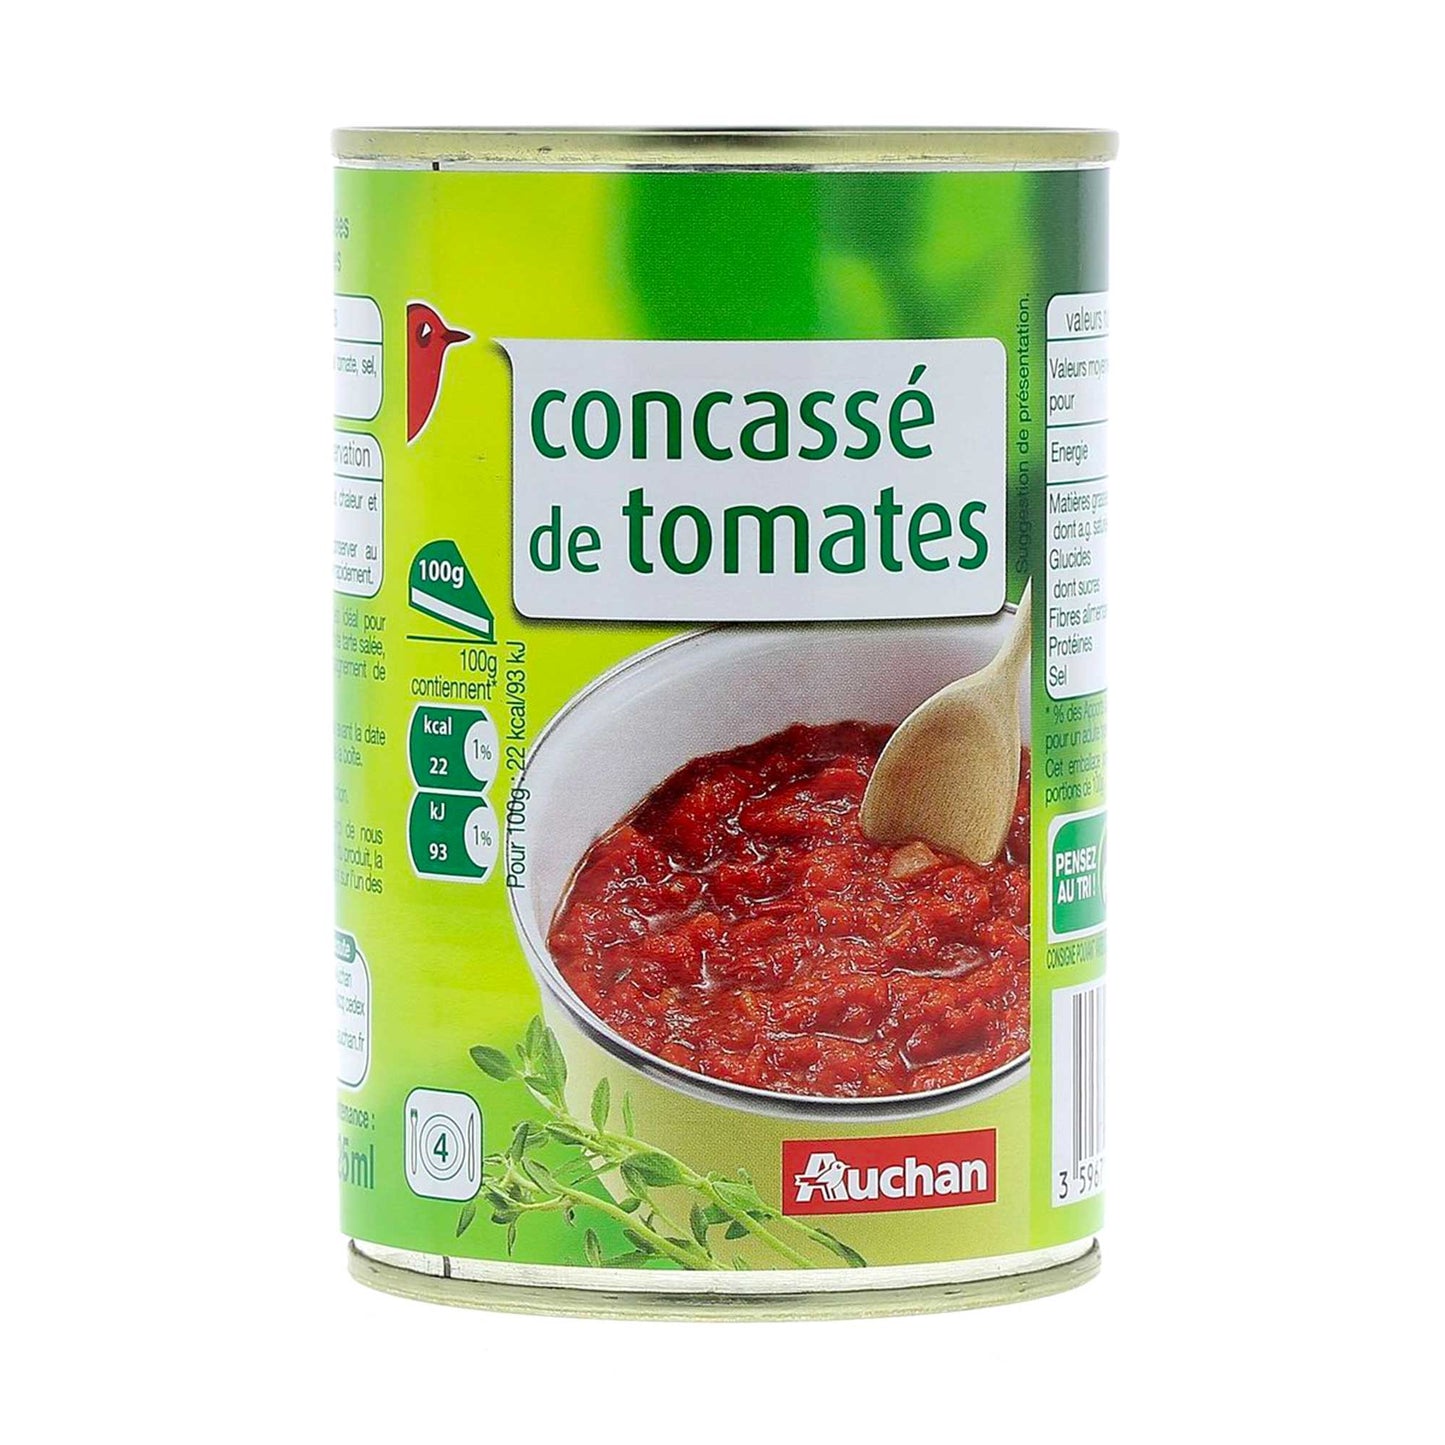 Concassé de tomates